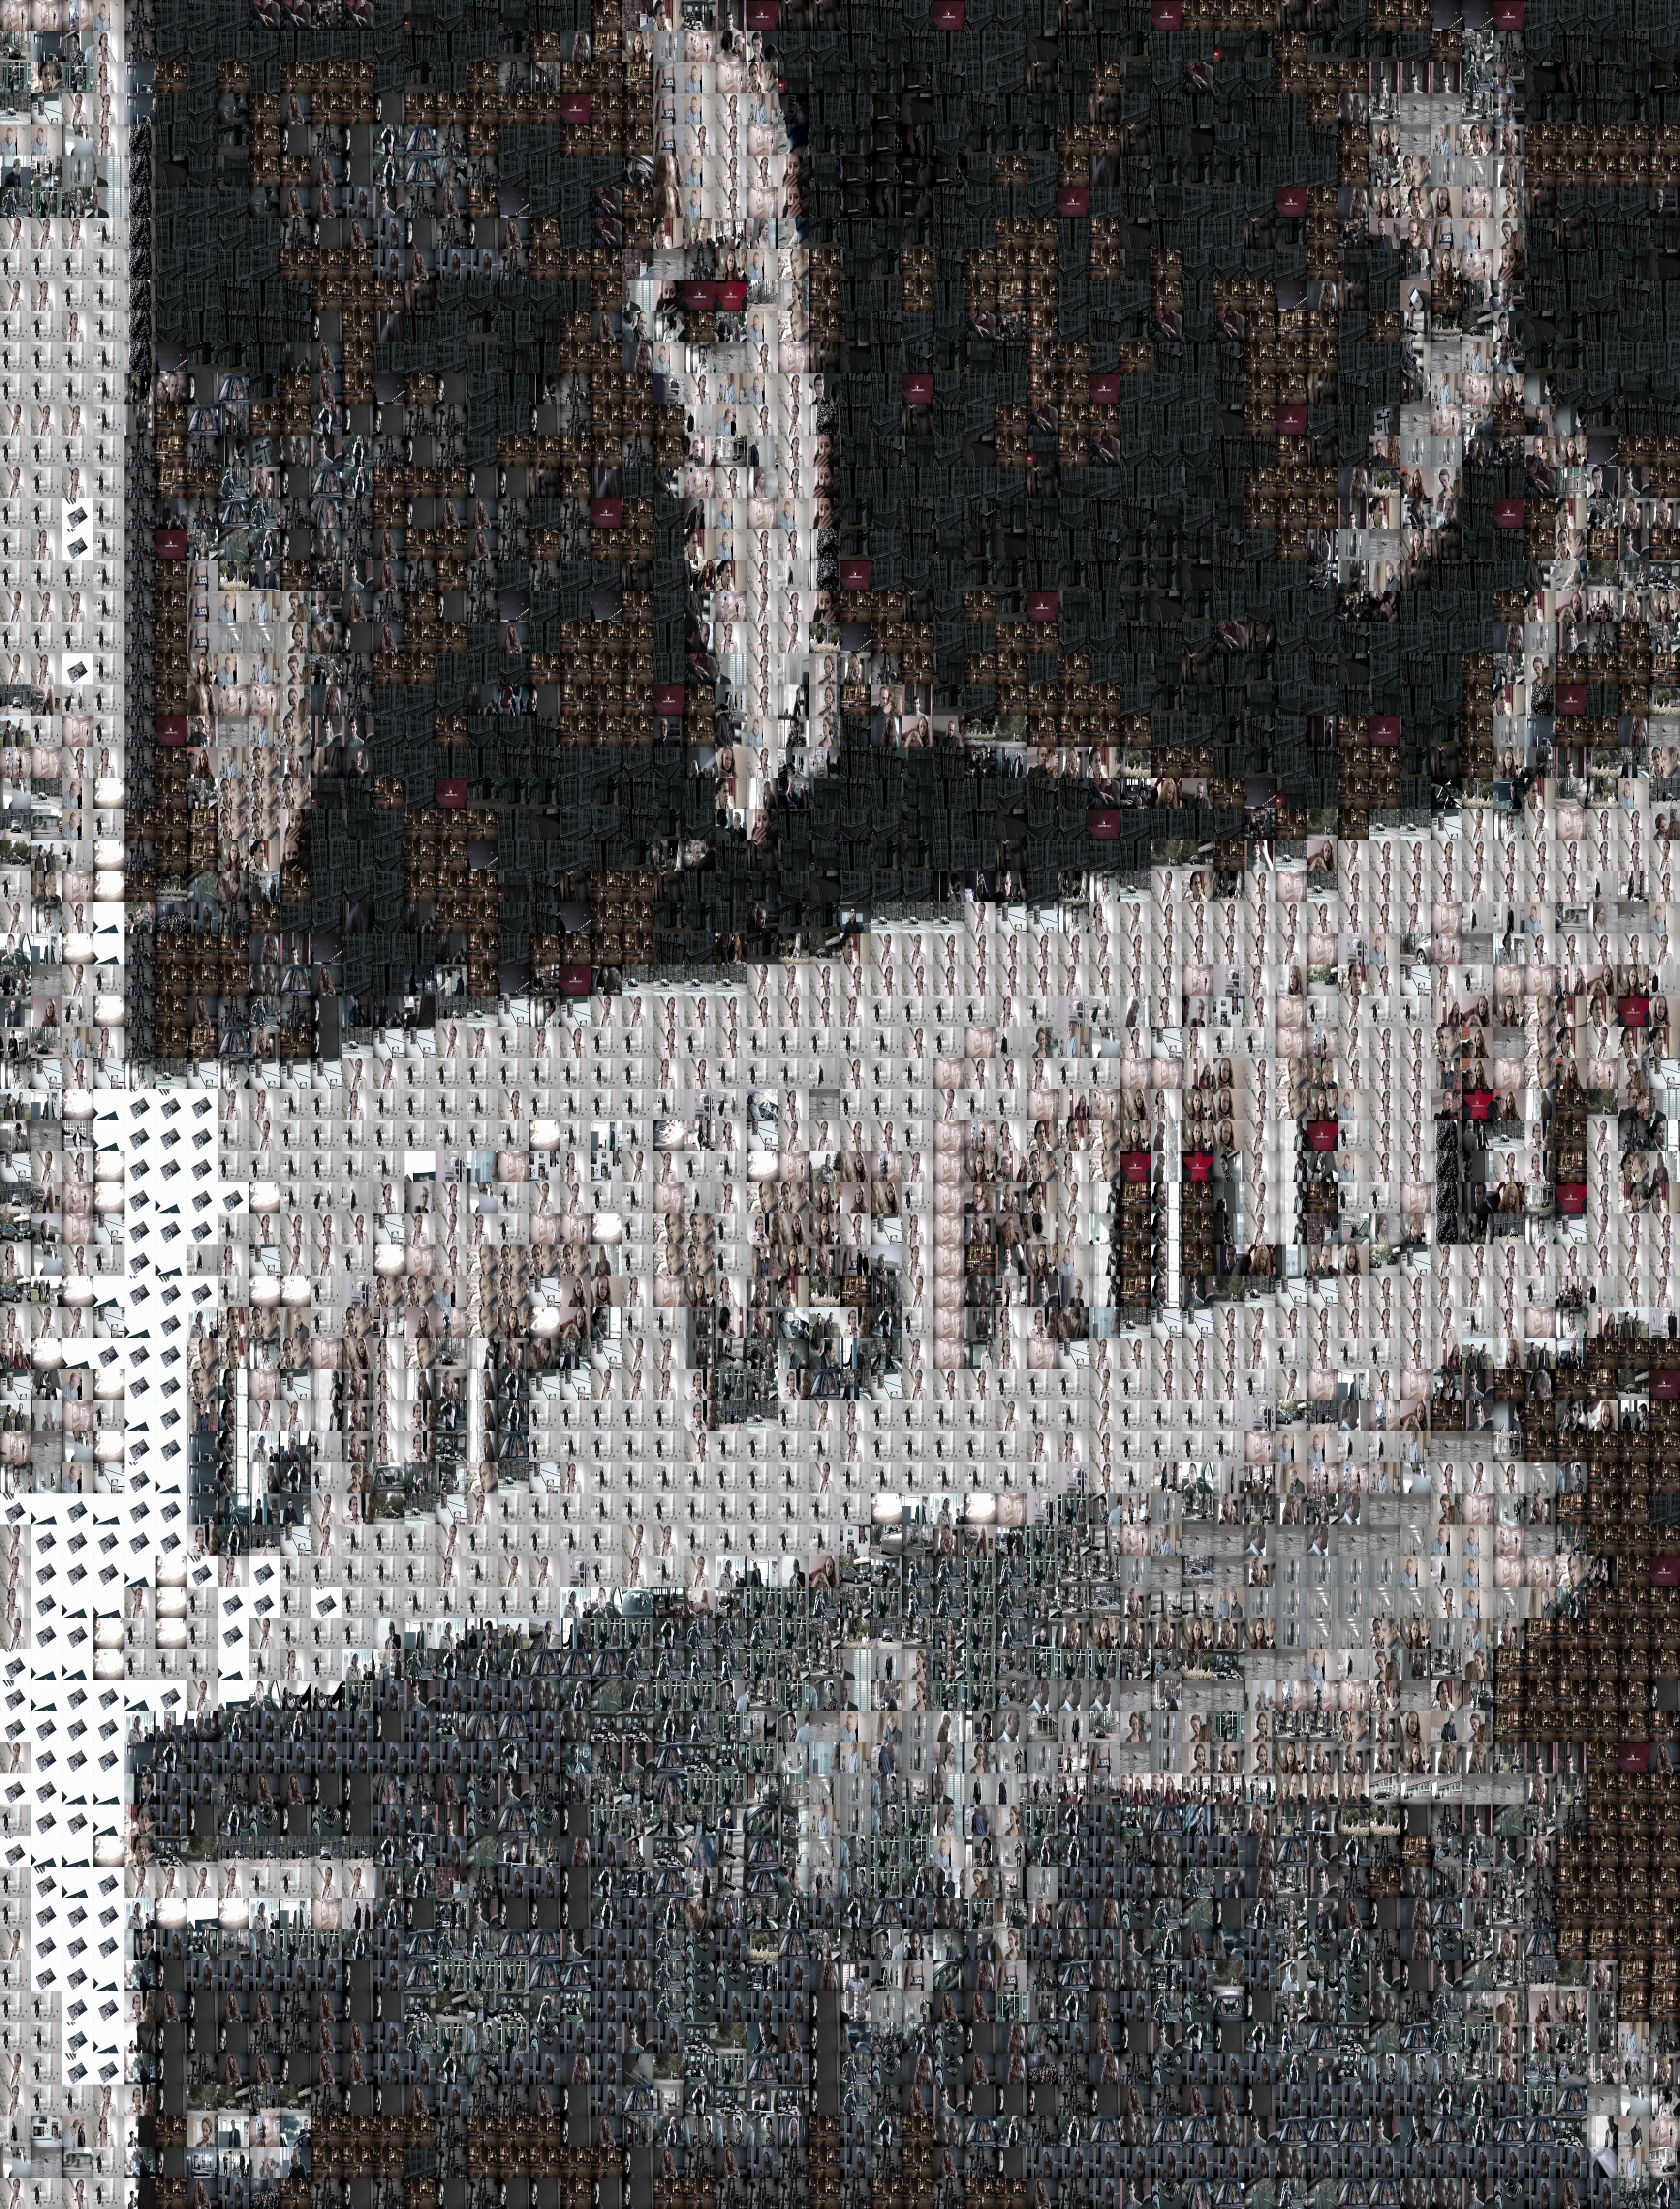 cop-vs-killer